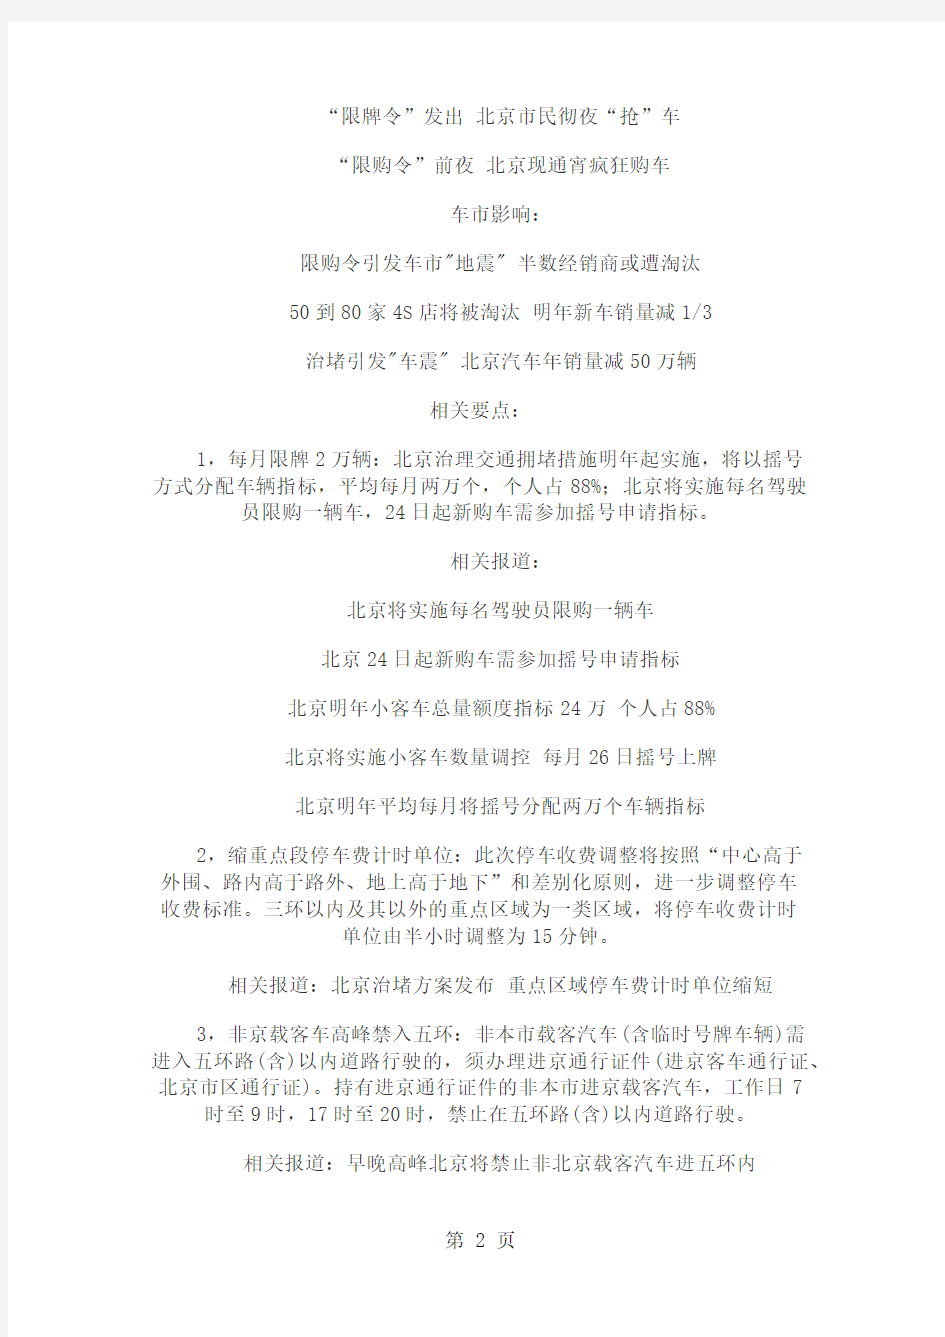 《北京市小客车数量调控暂行规定》实施细则13页